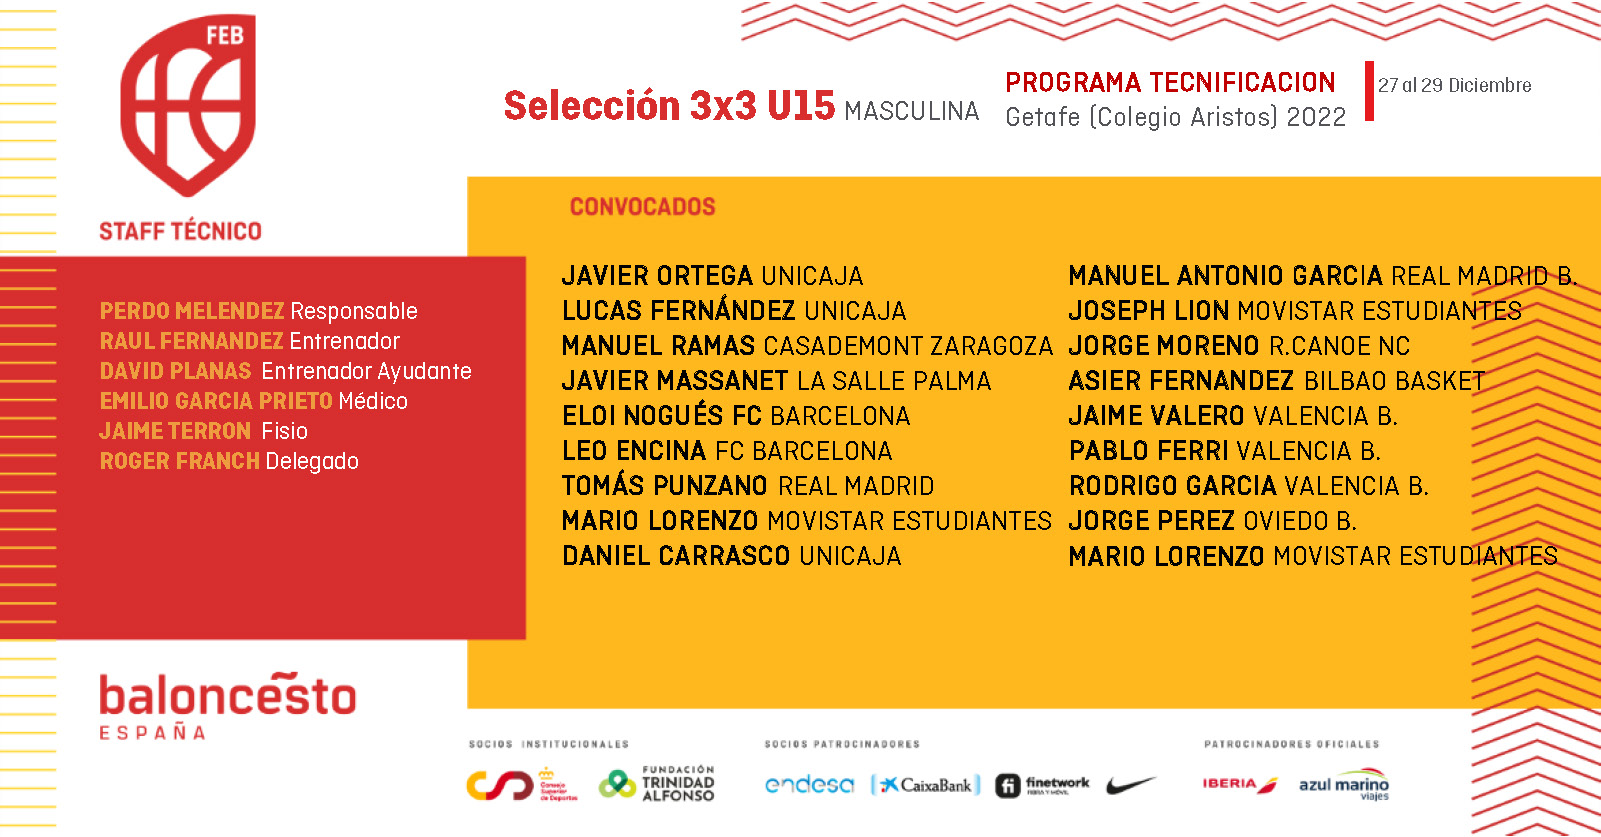 Selección 3x3 U15 Masculina. Programa de Tecnificación (Diciembre 2022)